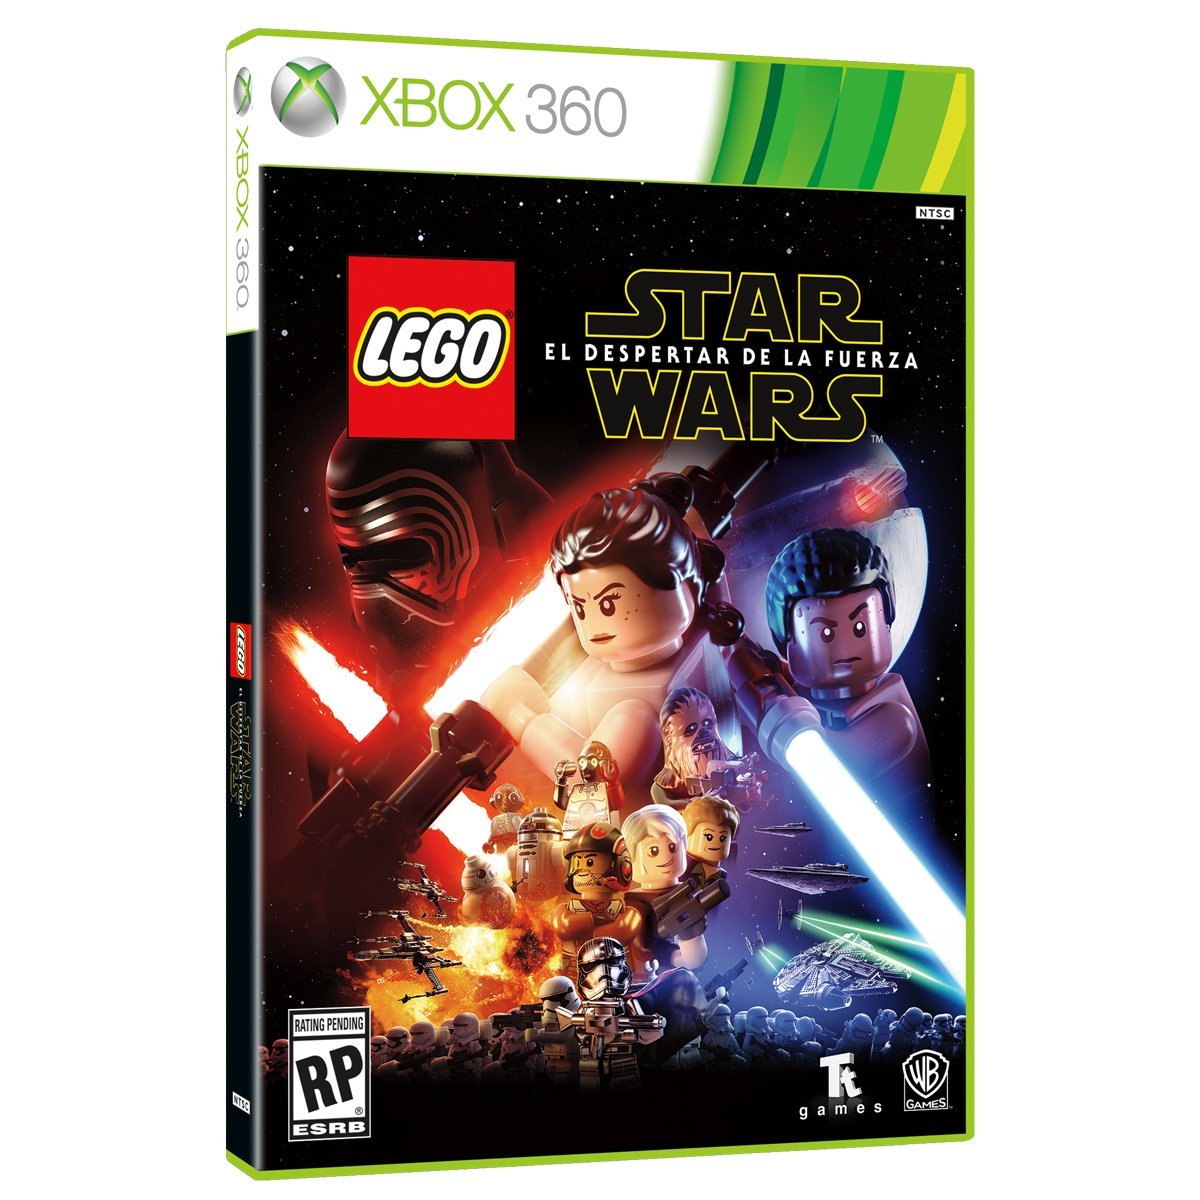 Xbox 360 Lego Star Wars el Despertar de la Fuerza